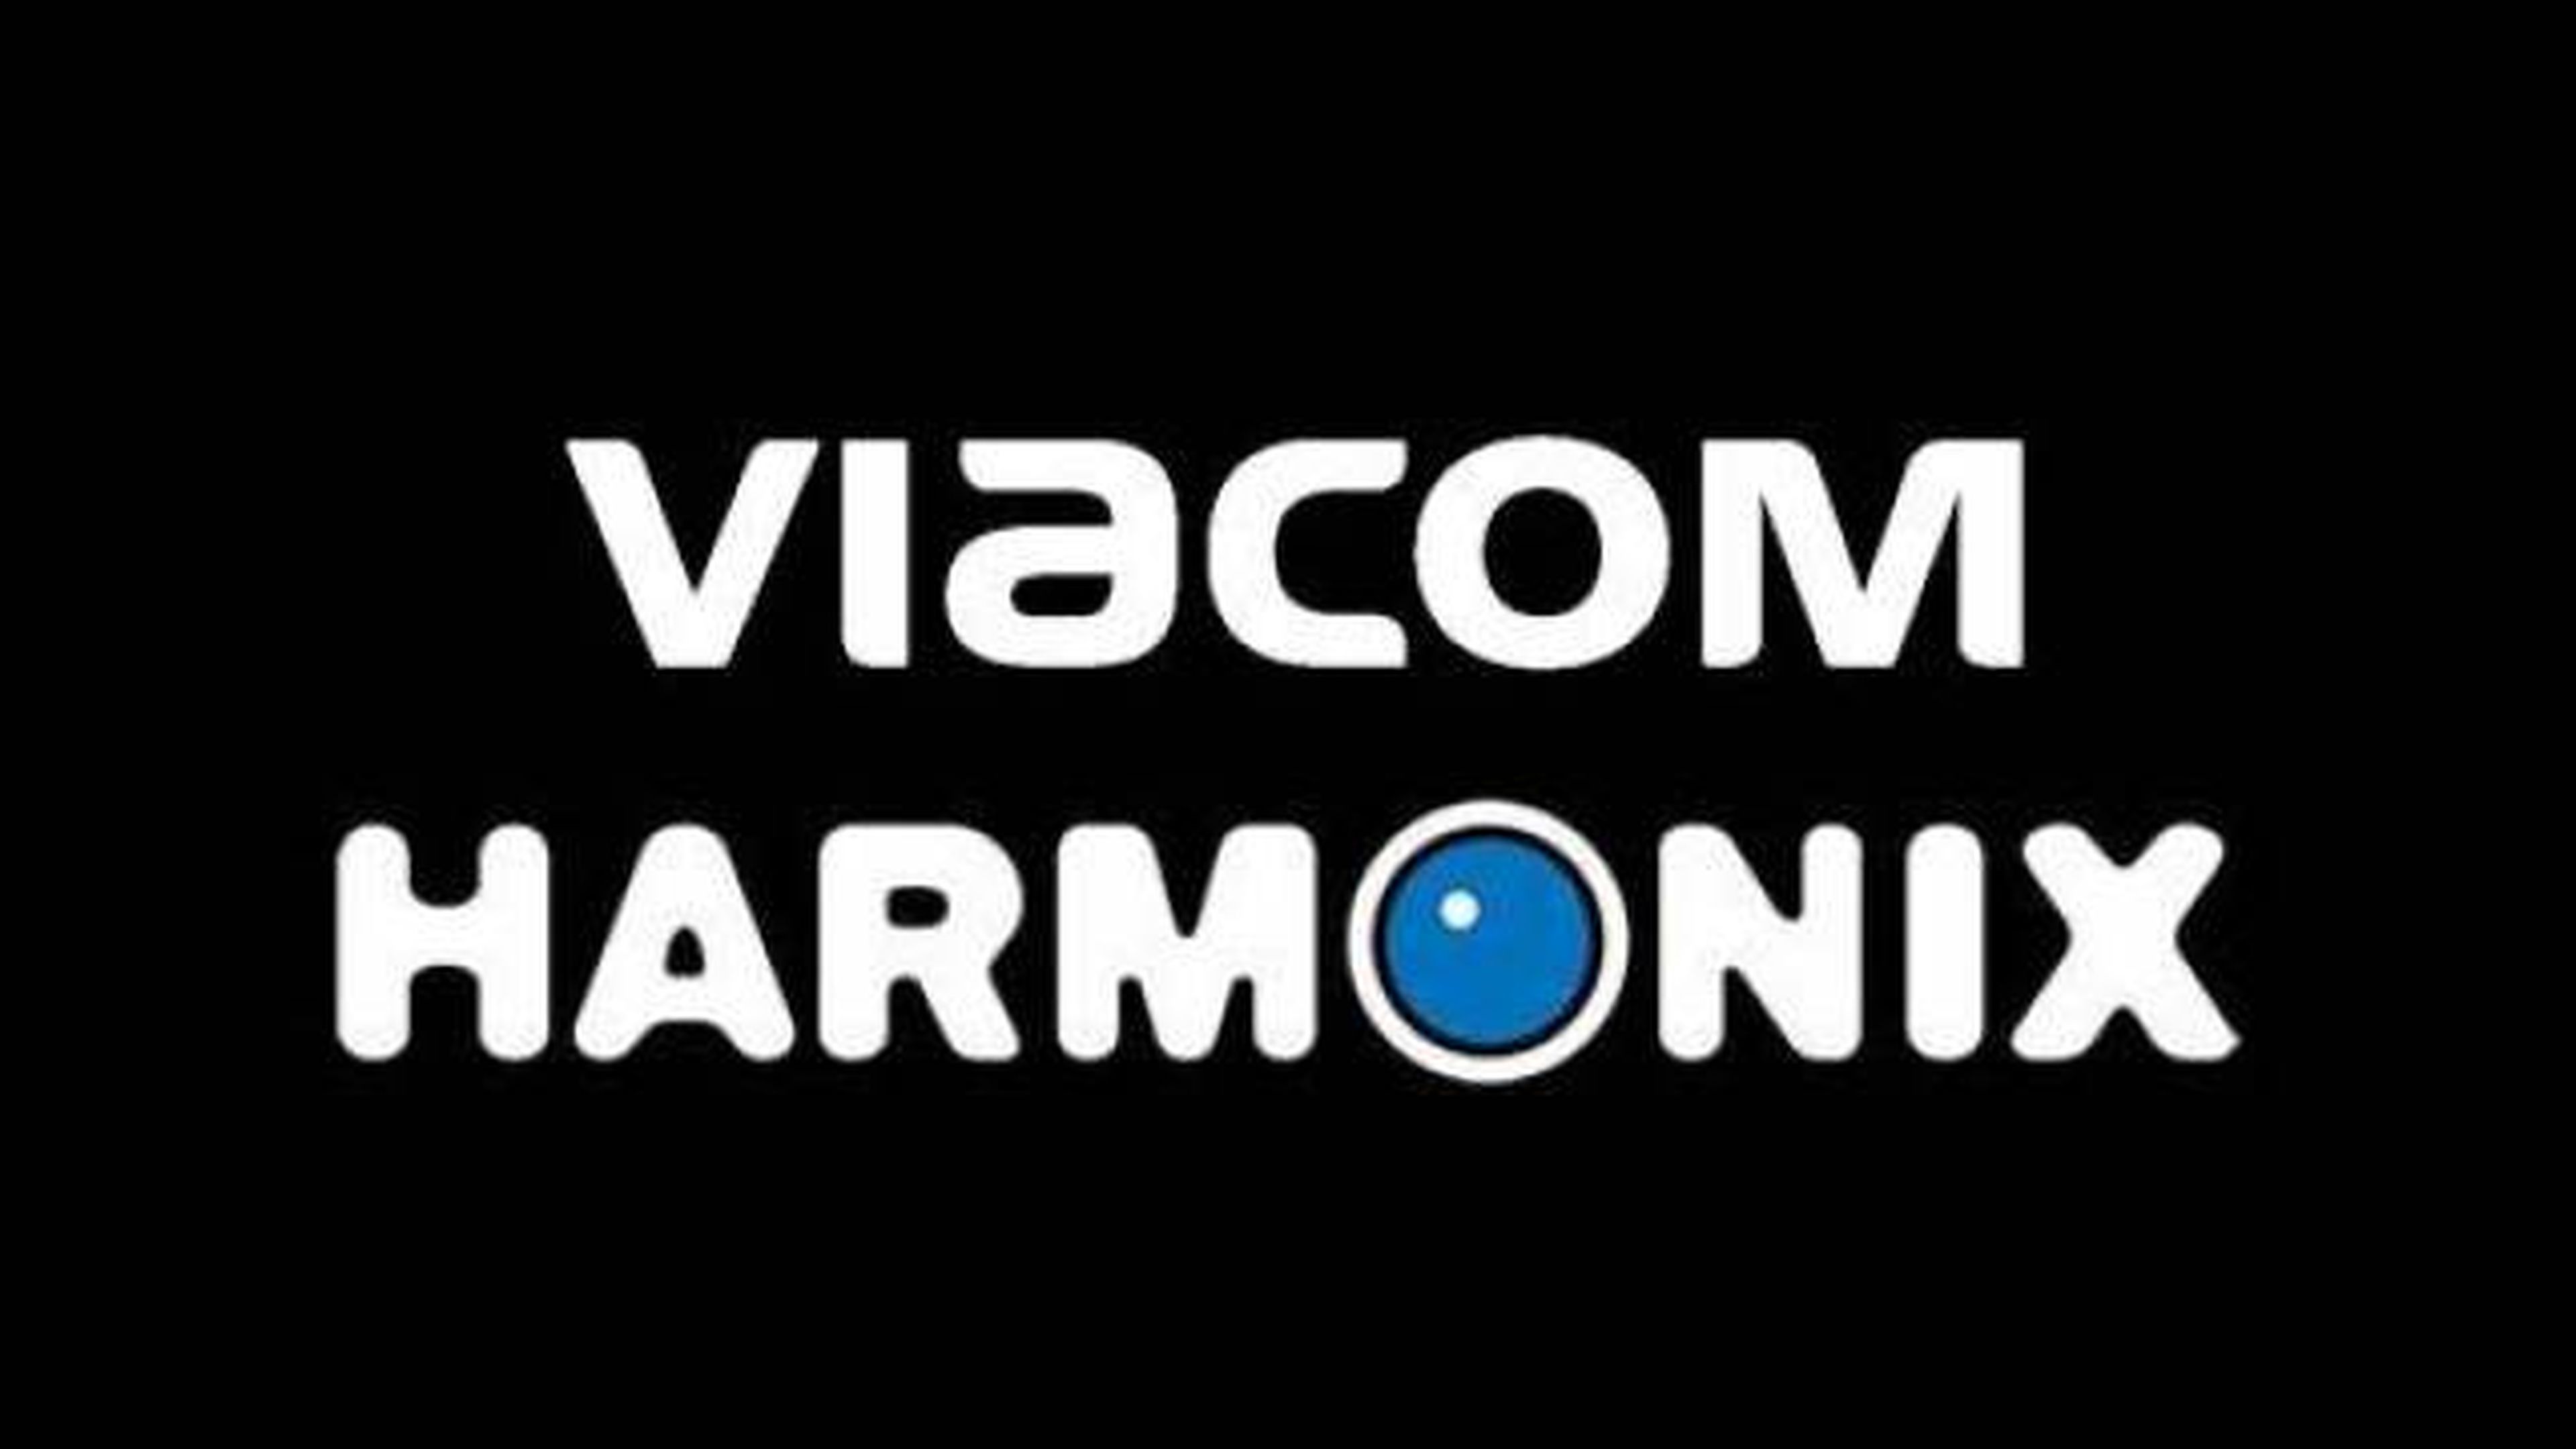 Viacom pagará 299 millones de dólares a Harmonix